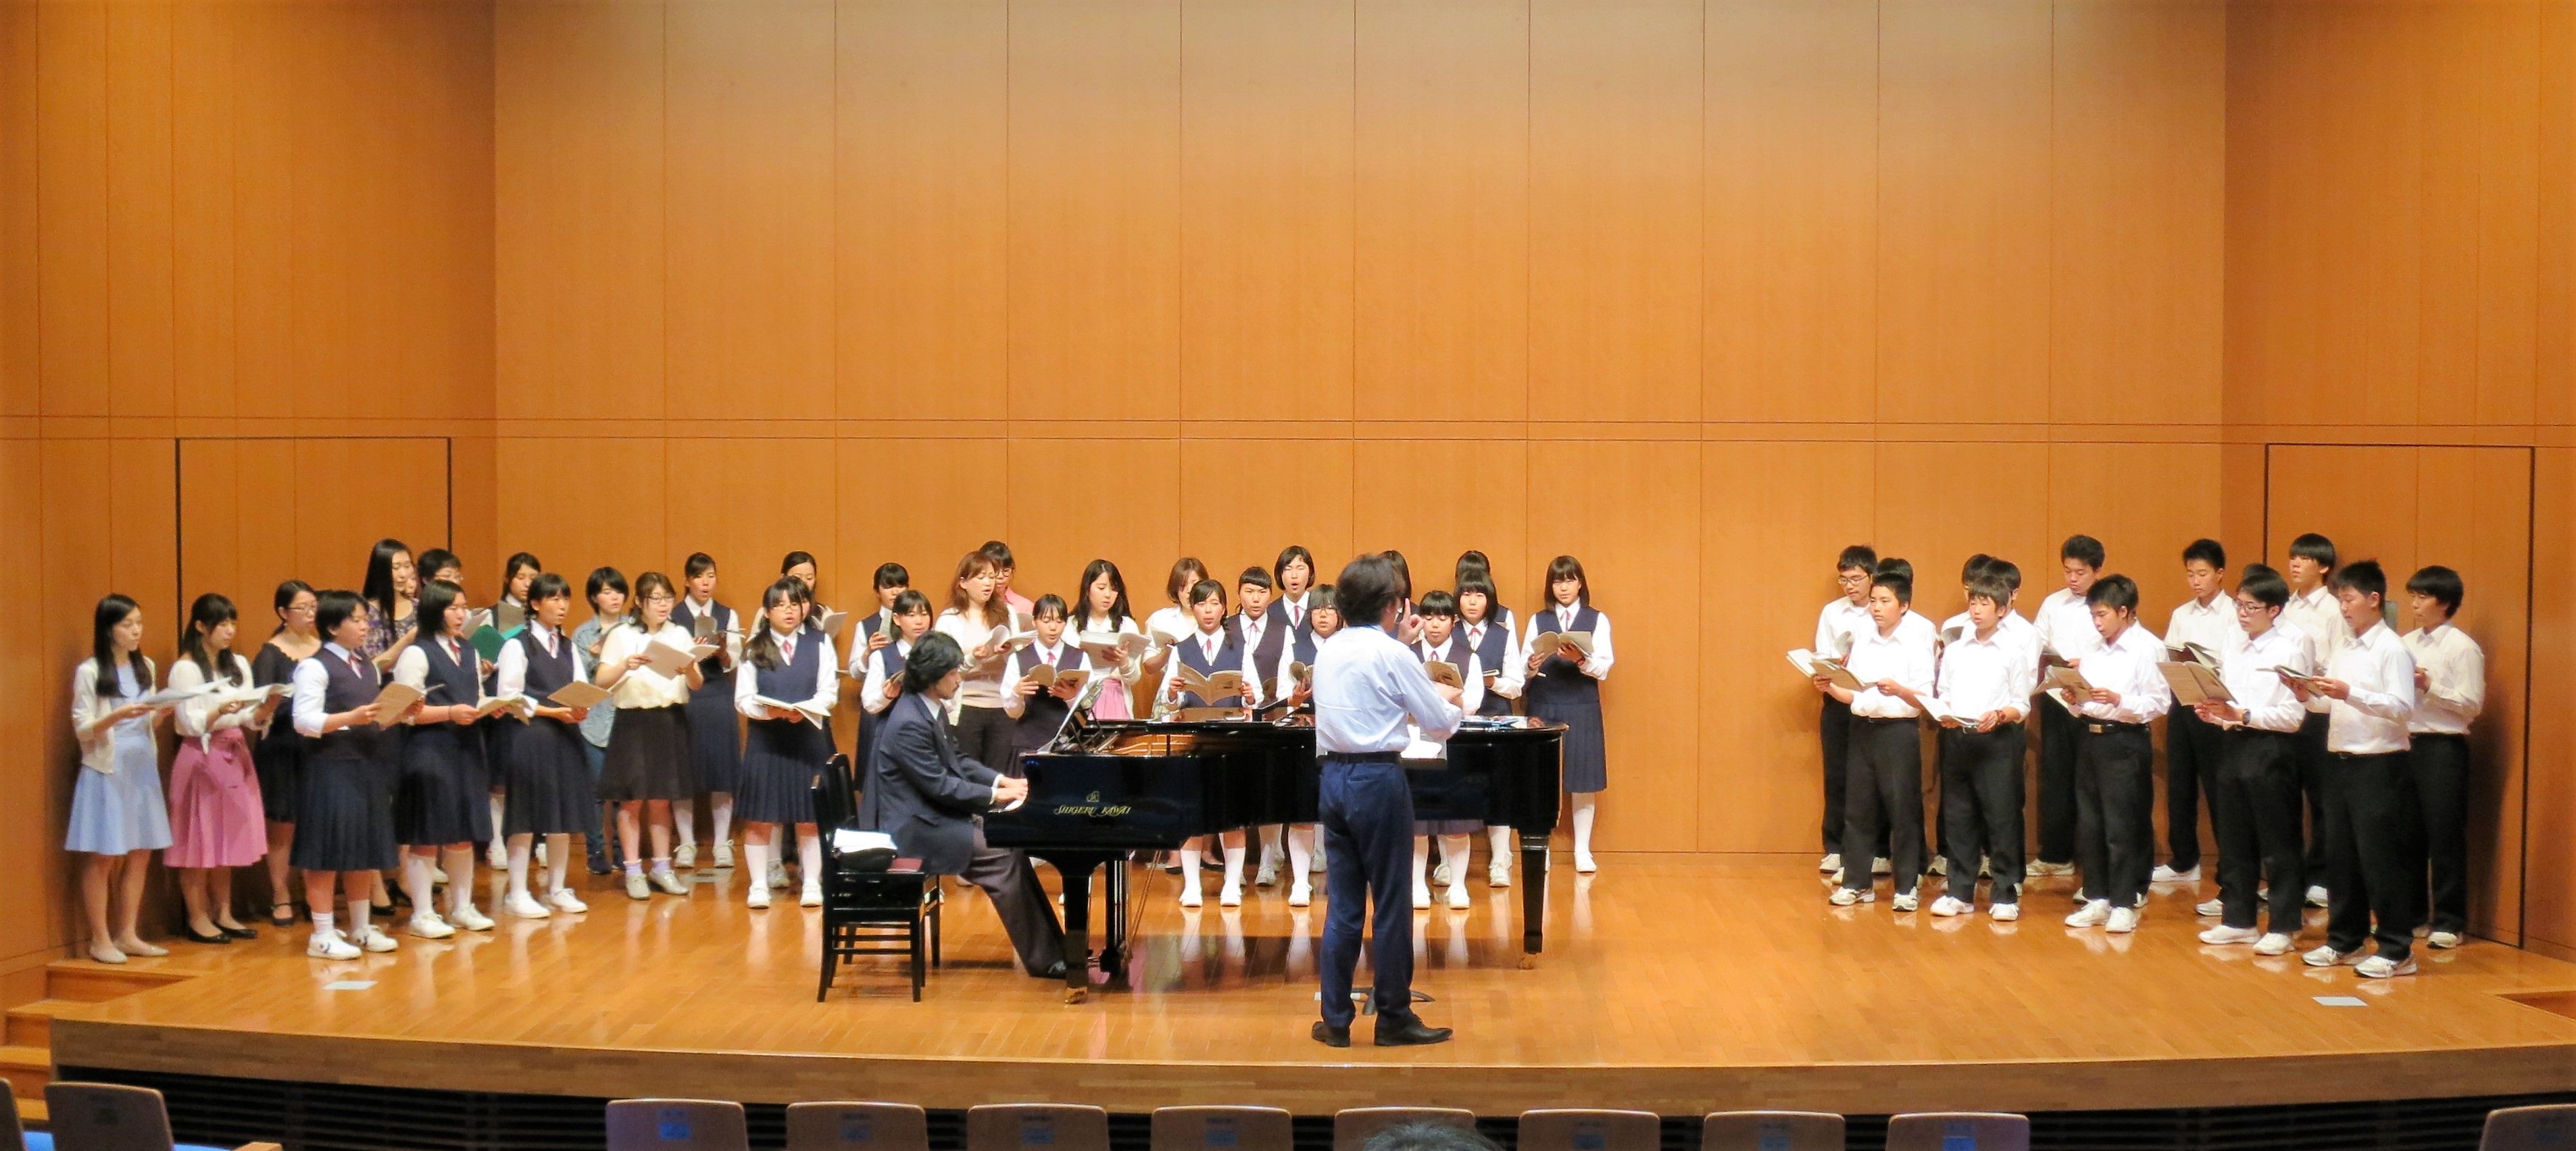 ともに歌い合い、学ぶ ～京都の中学生が音楽学部で合唱授業を体験～